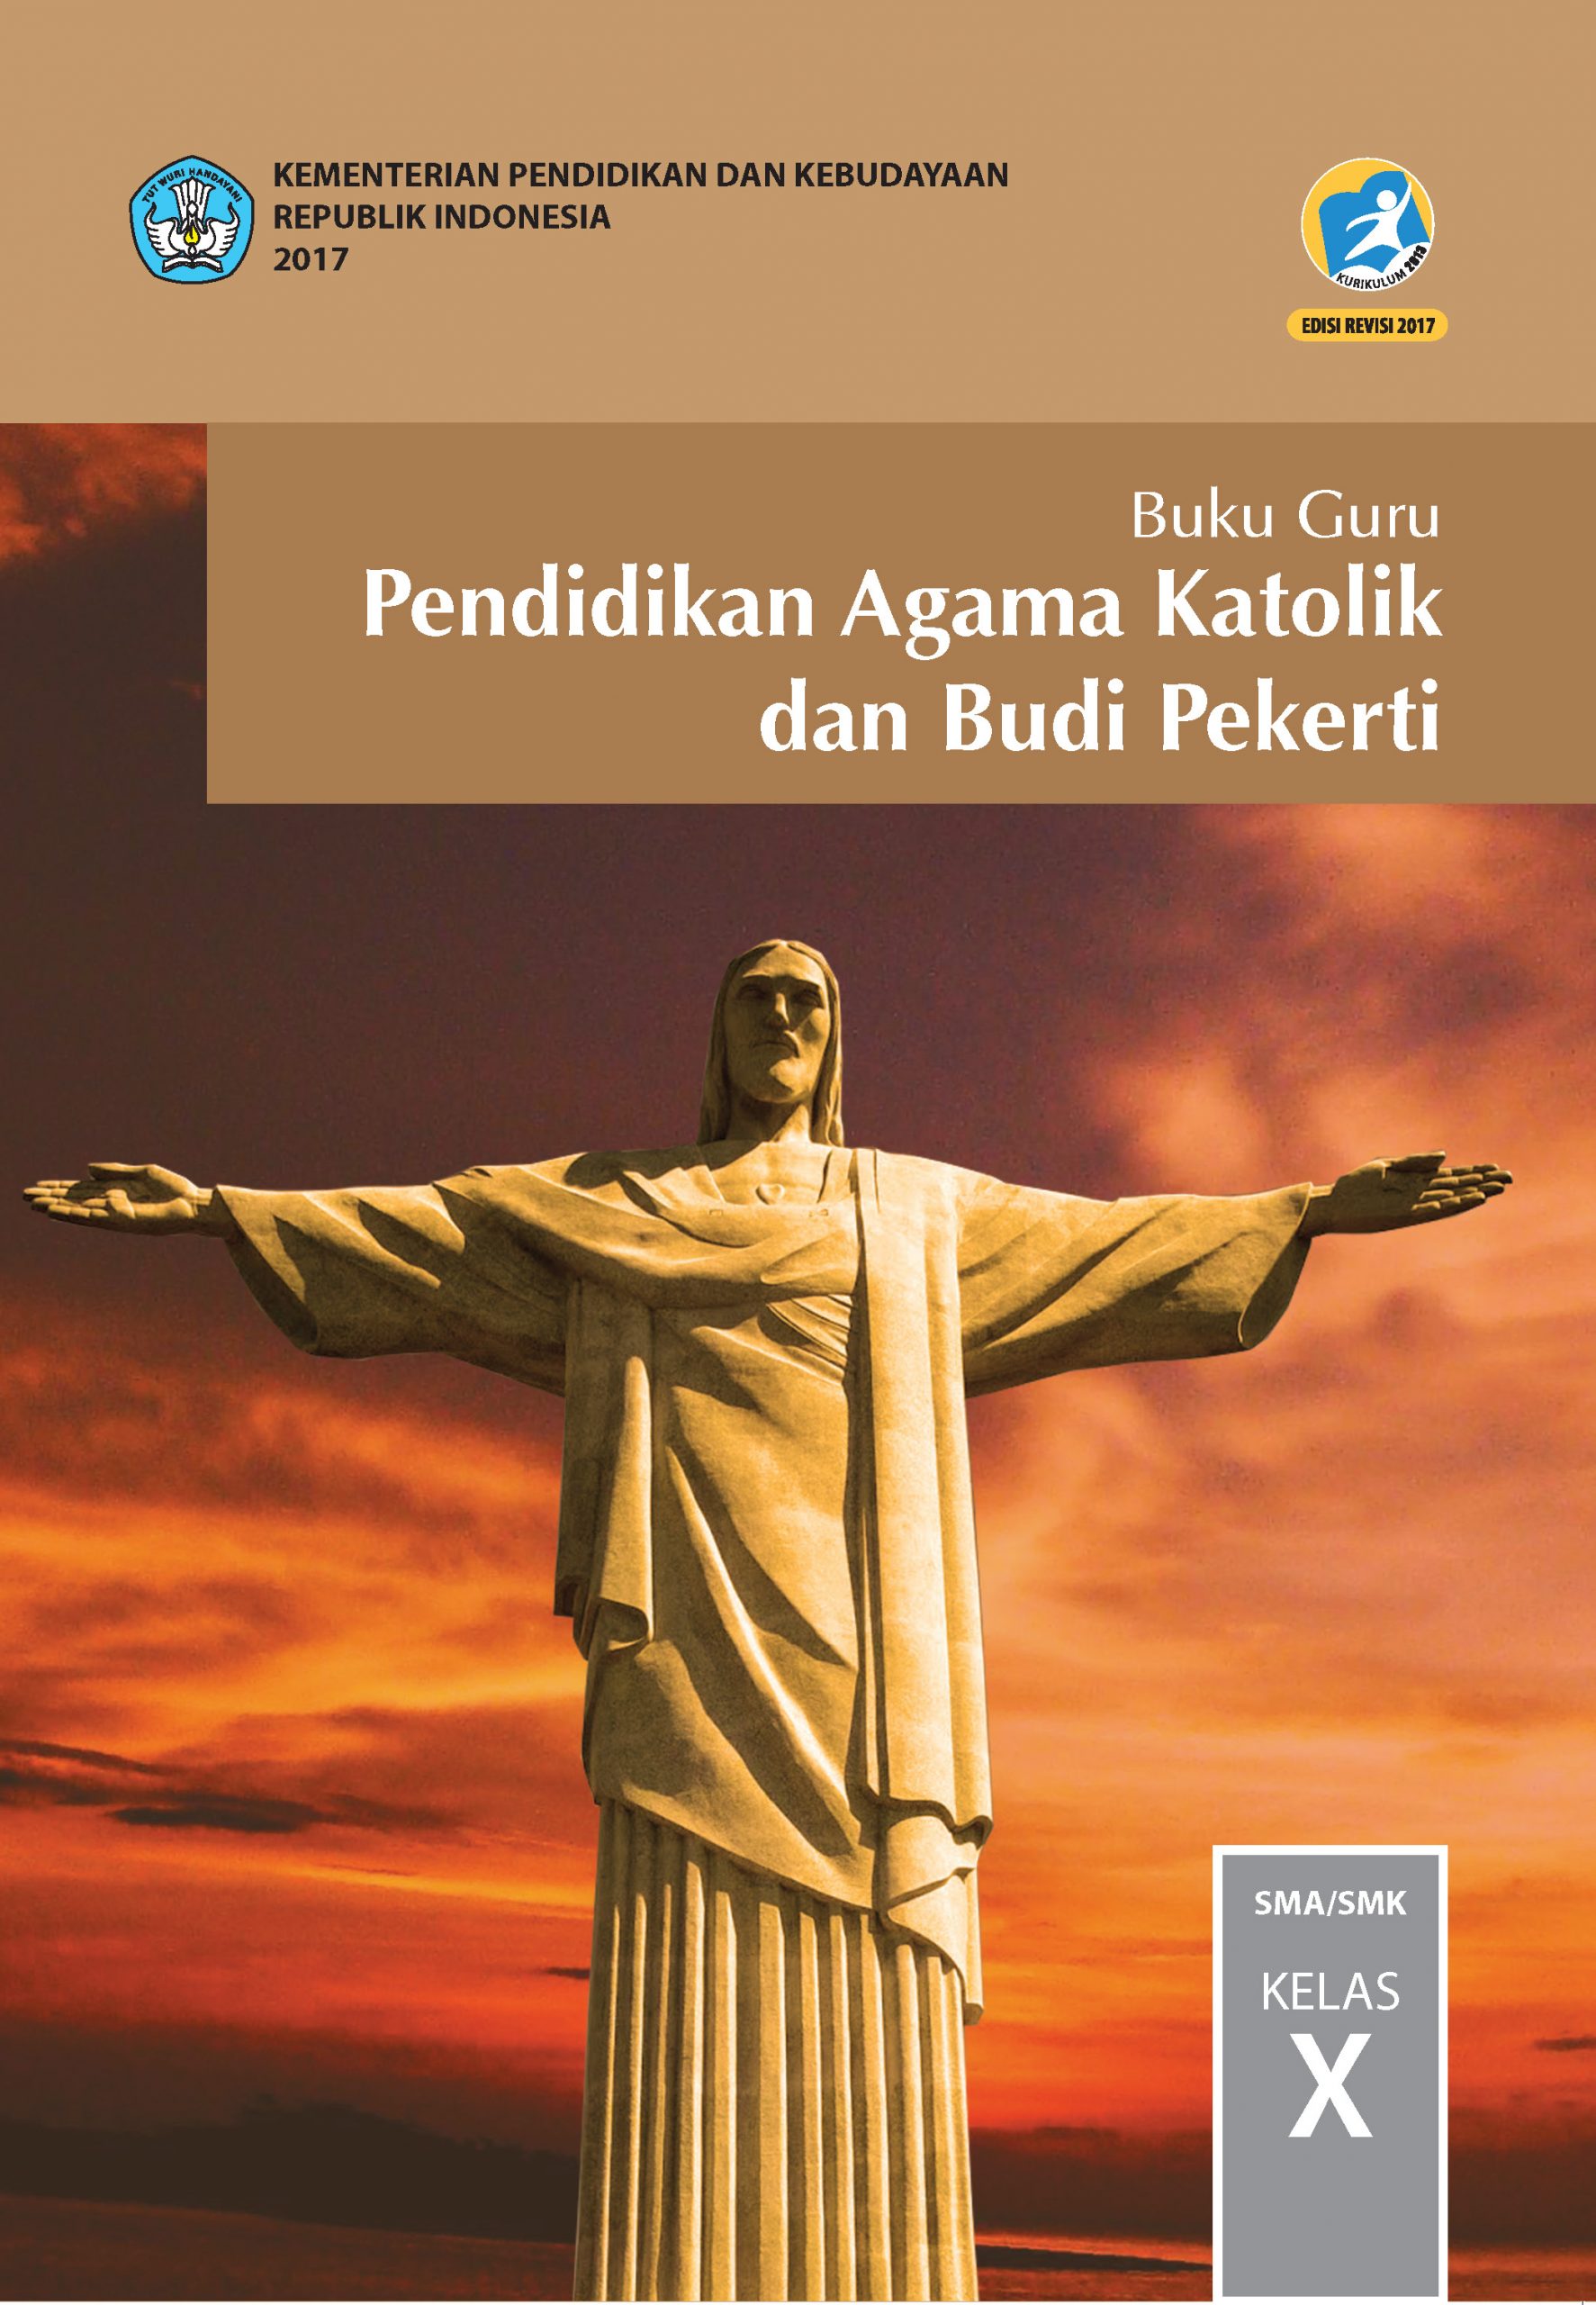 Buku Agama Katolik Kelas 3 SD Terbaik! Download Gratis PDF di Sini